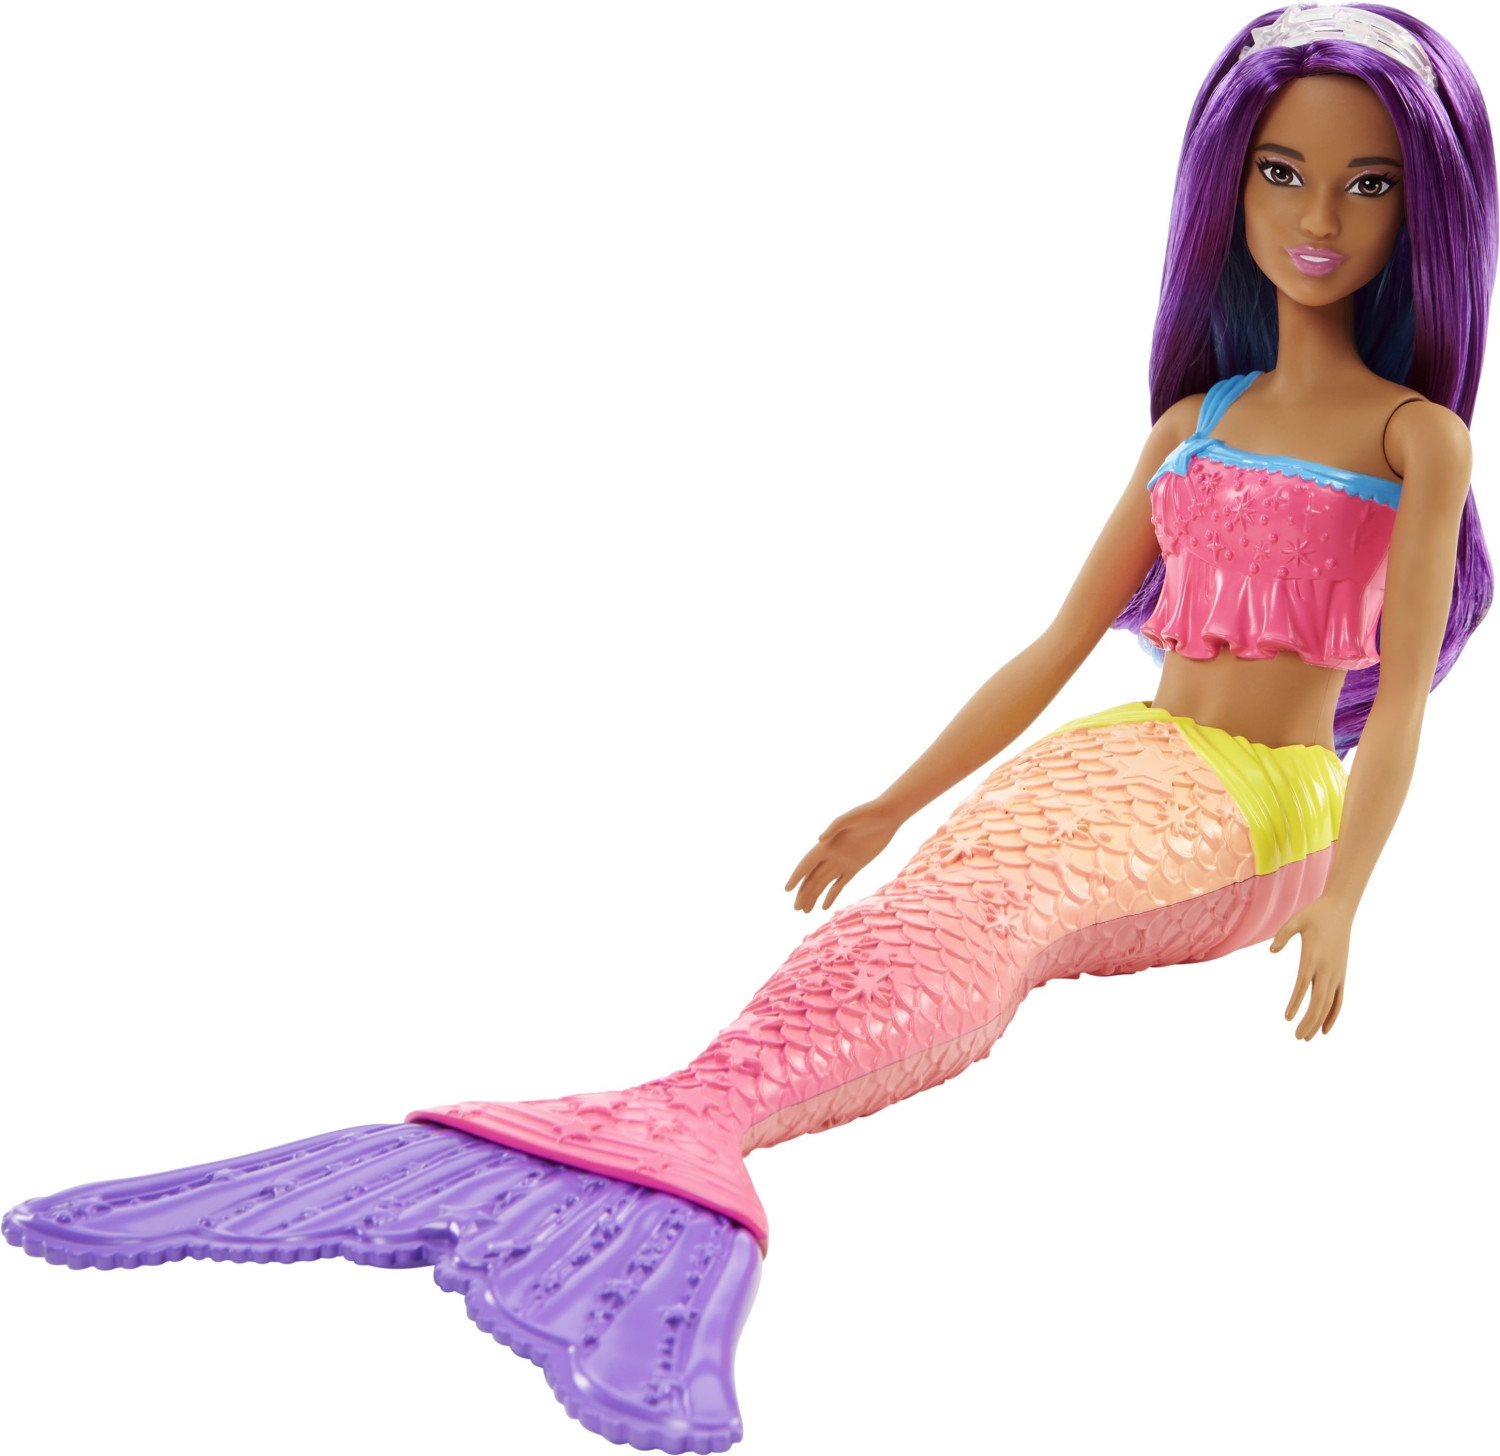 Barbie - Dreamtopia - Poupée Barbie Dreamtopia sirène arc-en-ciel